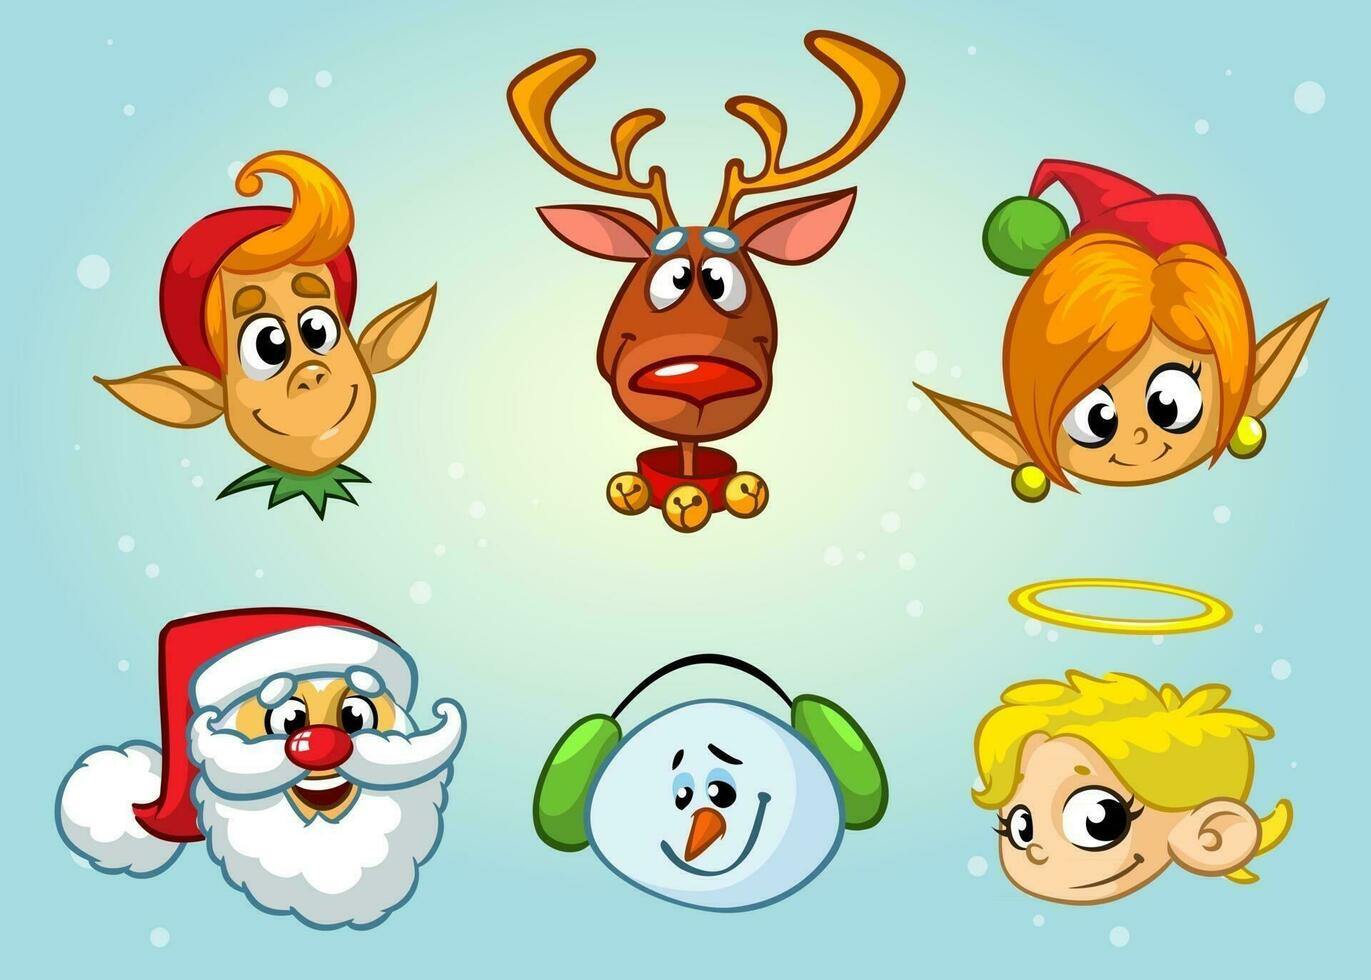 impostato di Natale personaggi. vettore cartone animato testa icone di Santa claus, renna, elfo, pupazzo di neve, angelo